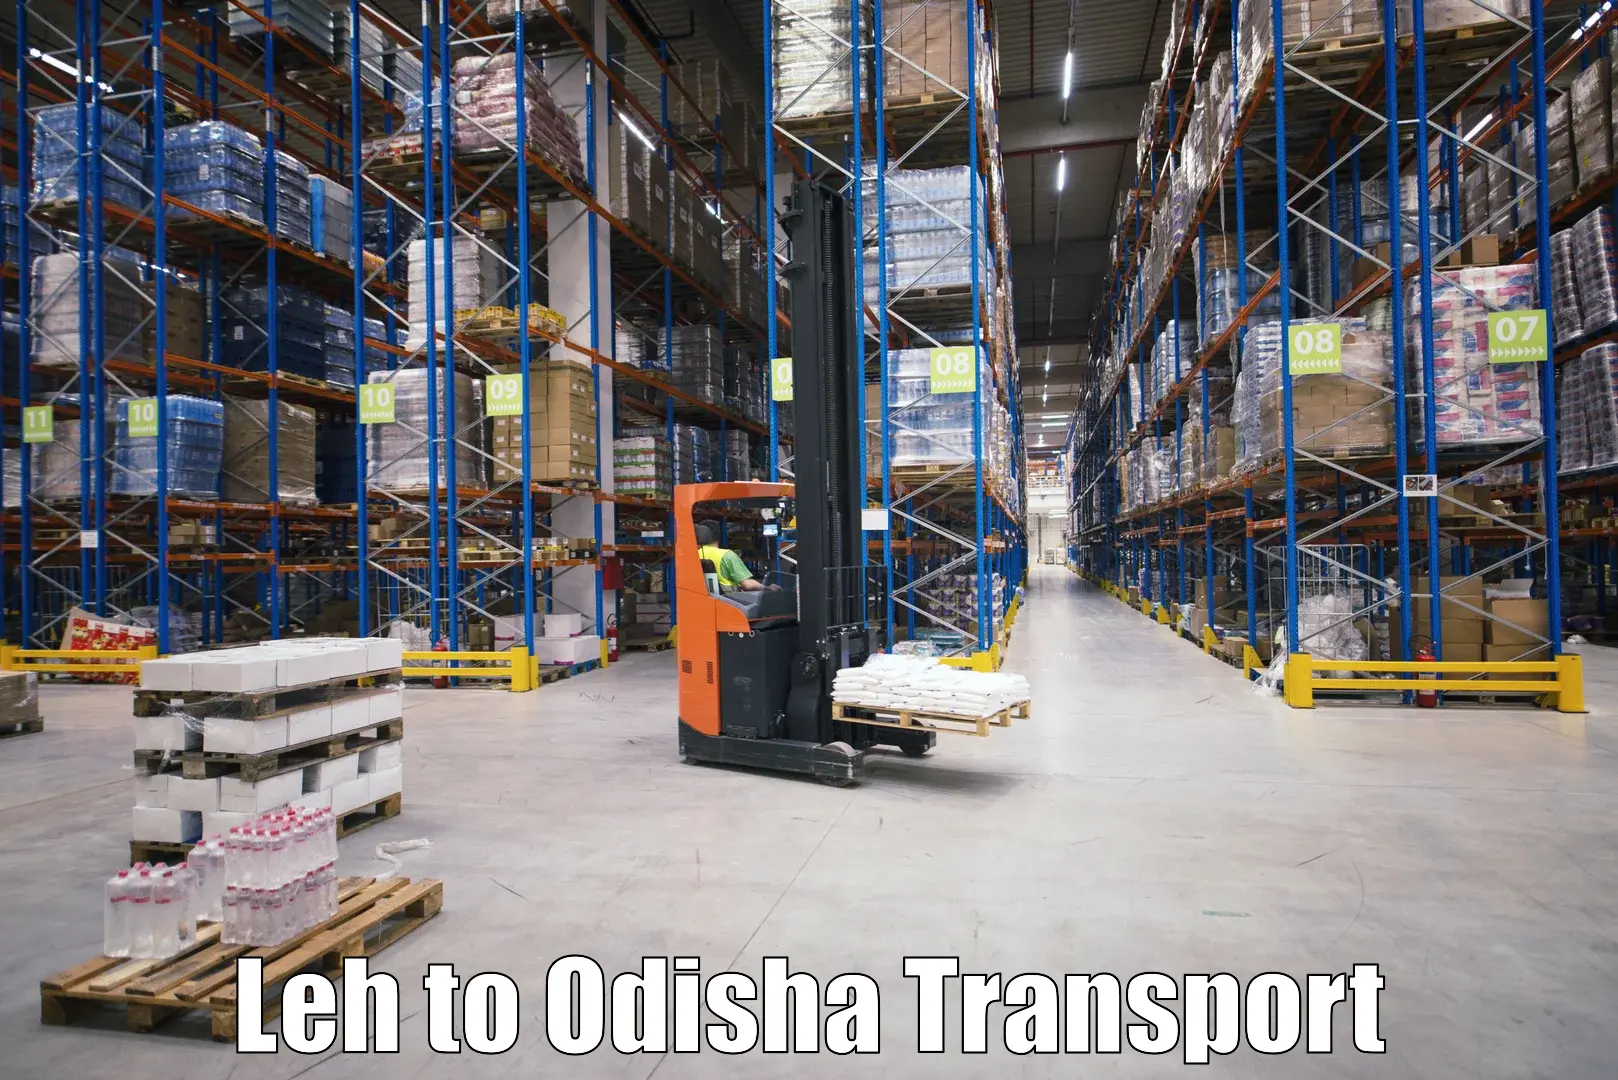 Furniture transport service Leh to IIT Bhubaneshwar